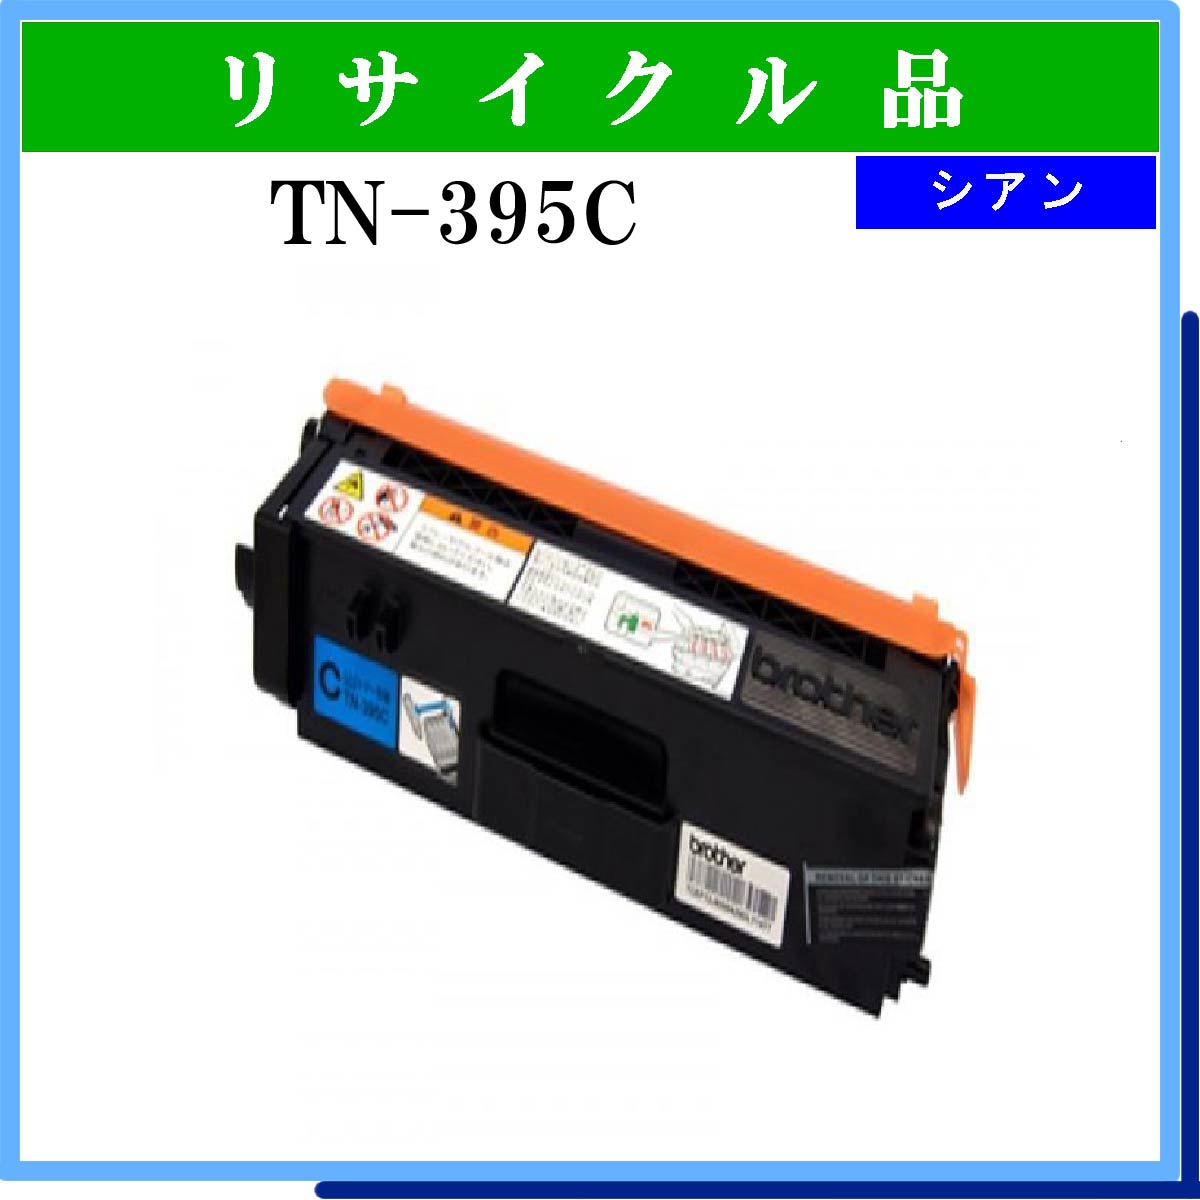 TN-395C